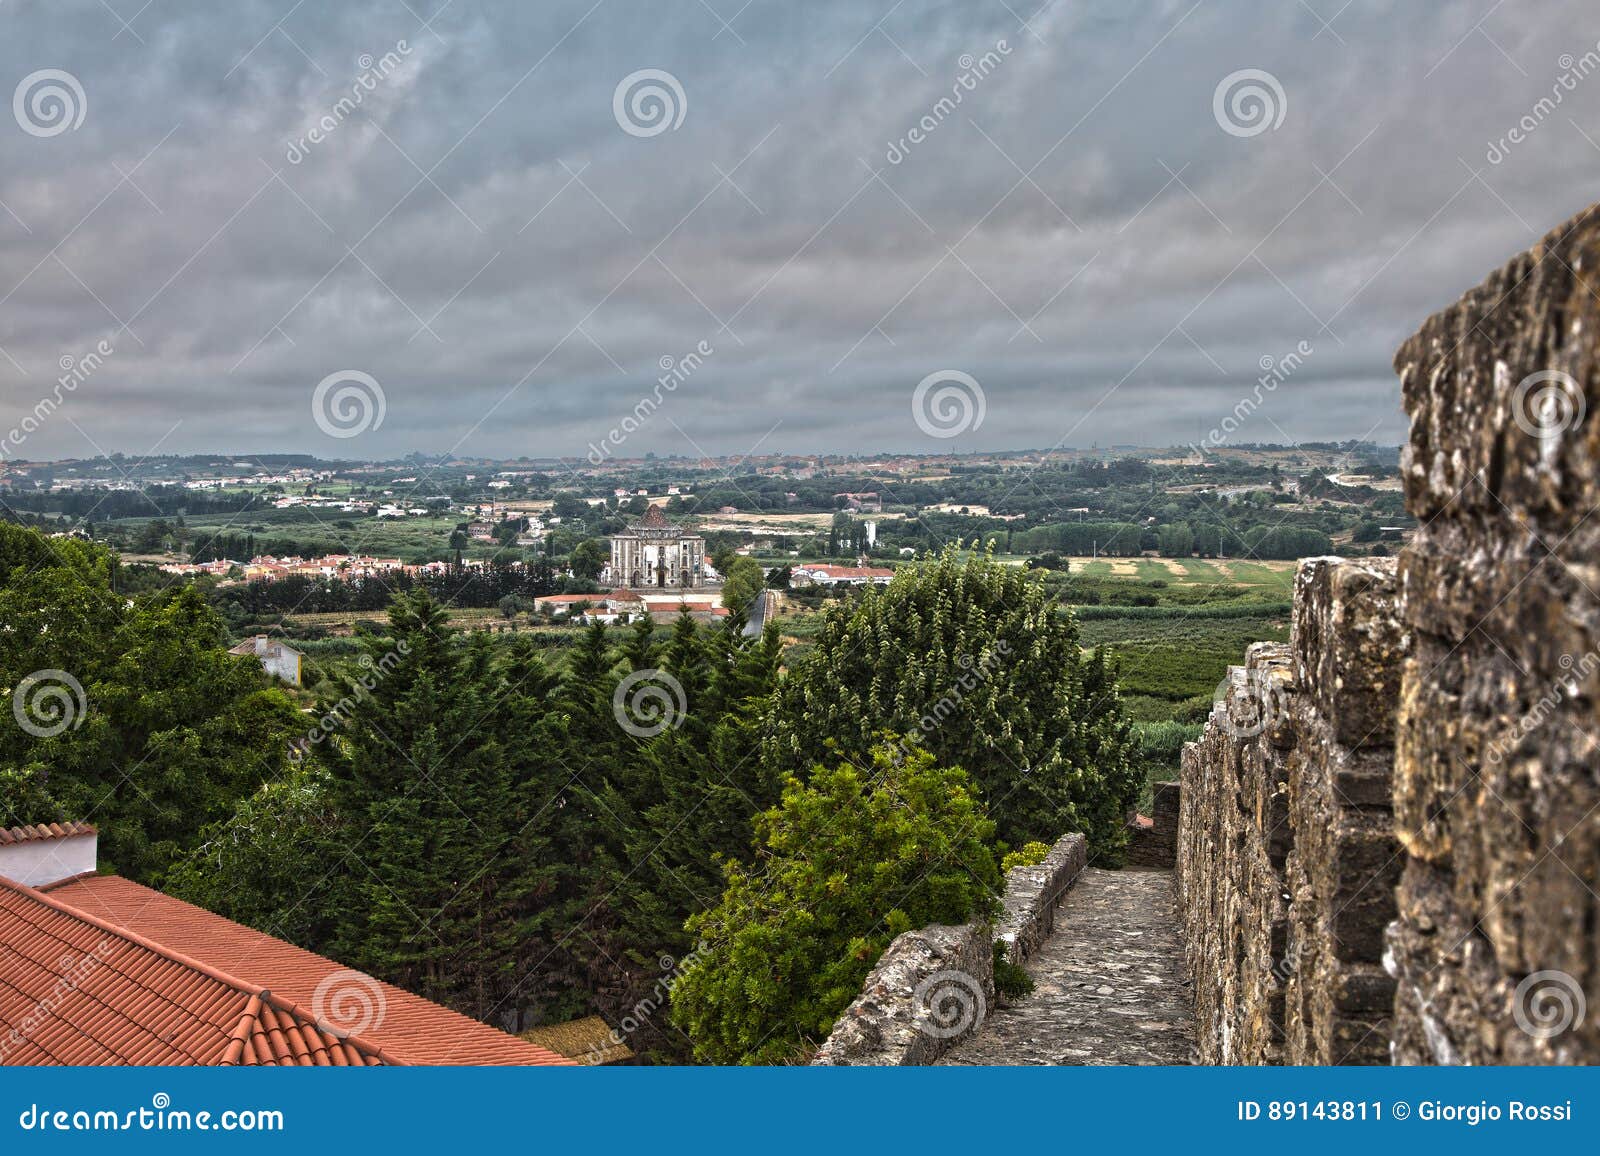 view from medieval portuguese city of obidos walls: nucleo museolugico do santuario do senhor jesus da pedra